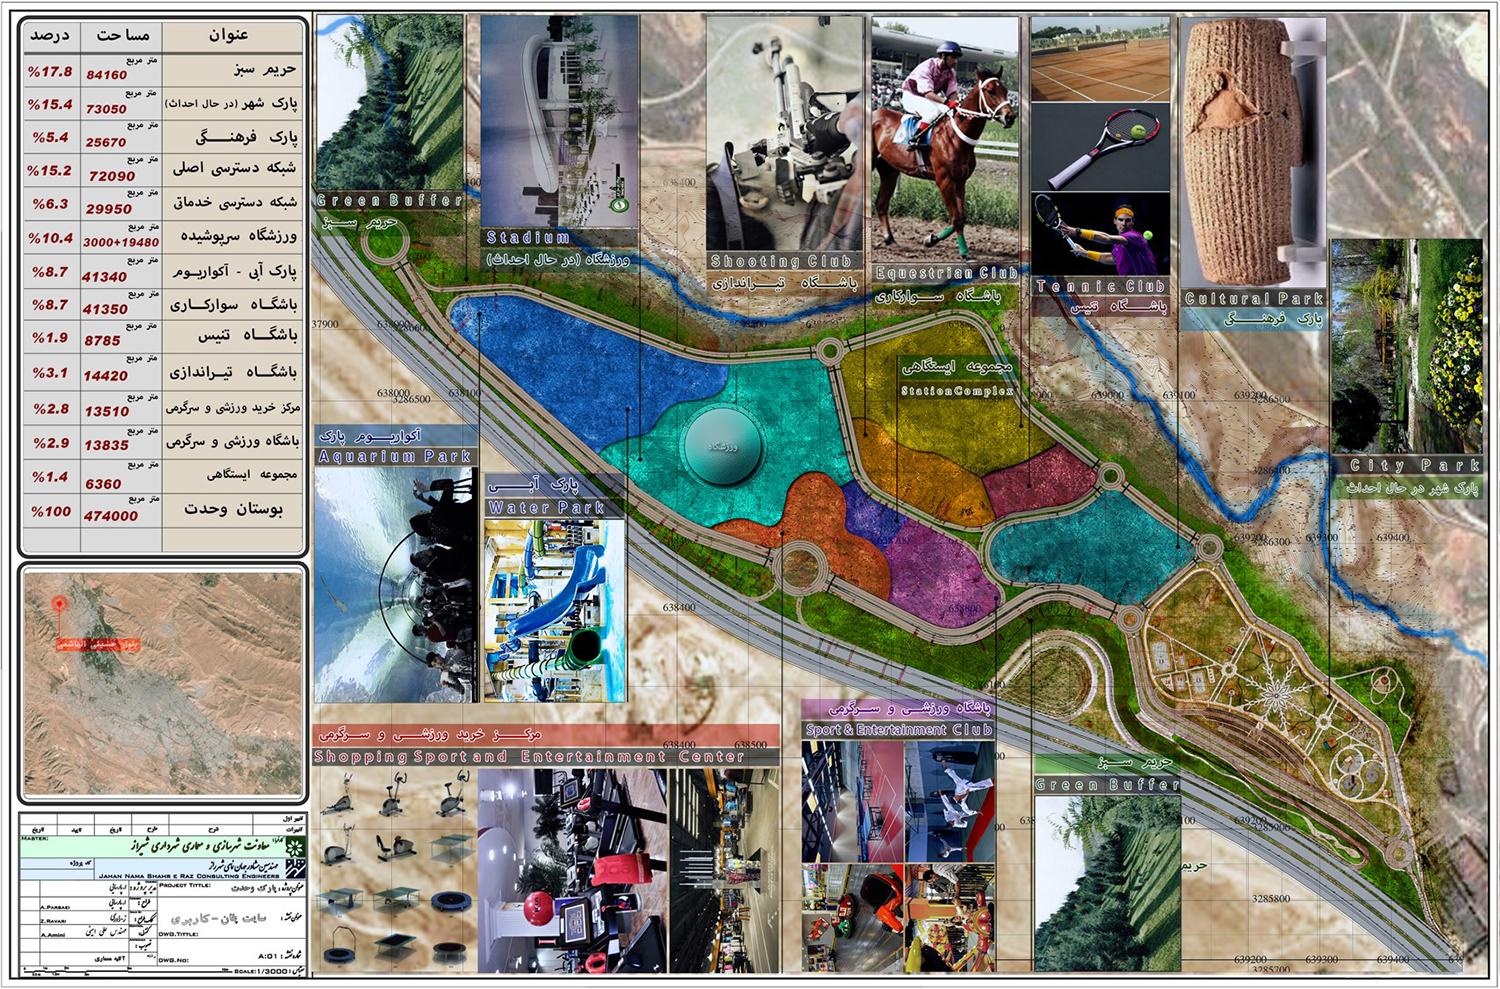 آغاز احداث ۵ بوستان با اعتباری بالغ بر ۳۷۴ میلیارد ریال در سطح منطقه ۱۰ شیراز/  ۶ بوستان و پیاده راه دیگر در دست طراحی و تایید طراحی معماری در منطقه ۱۰